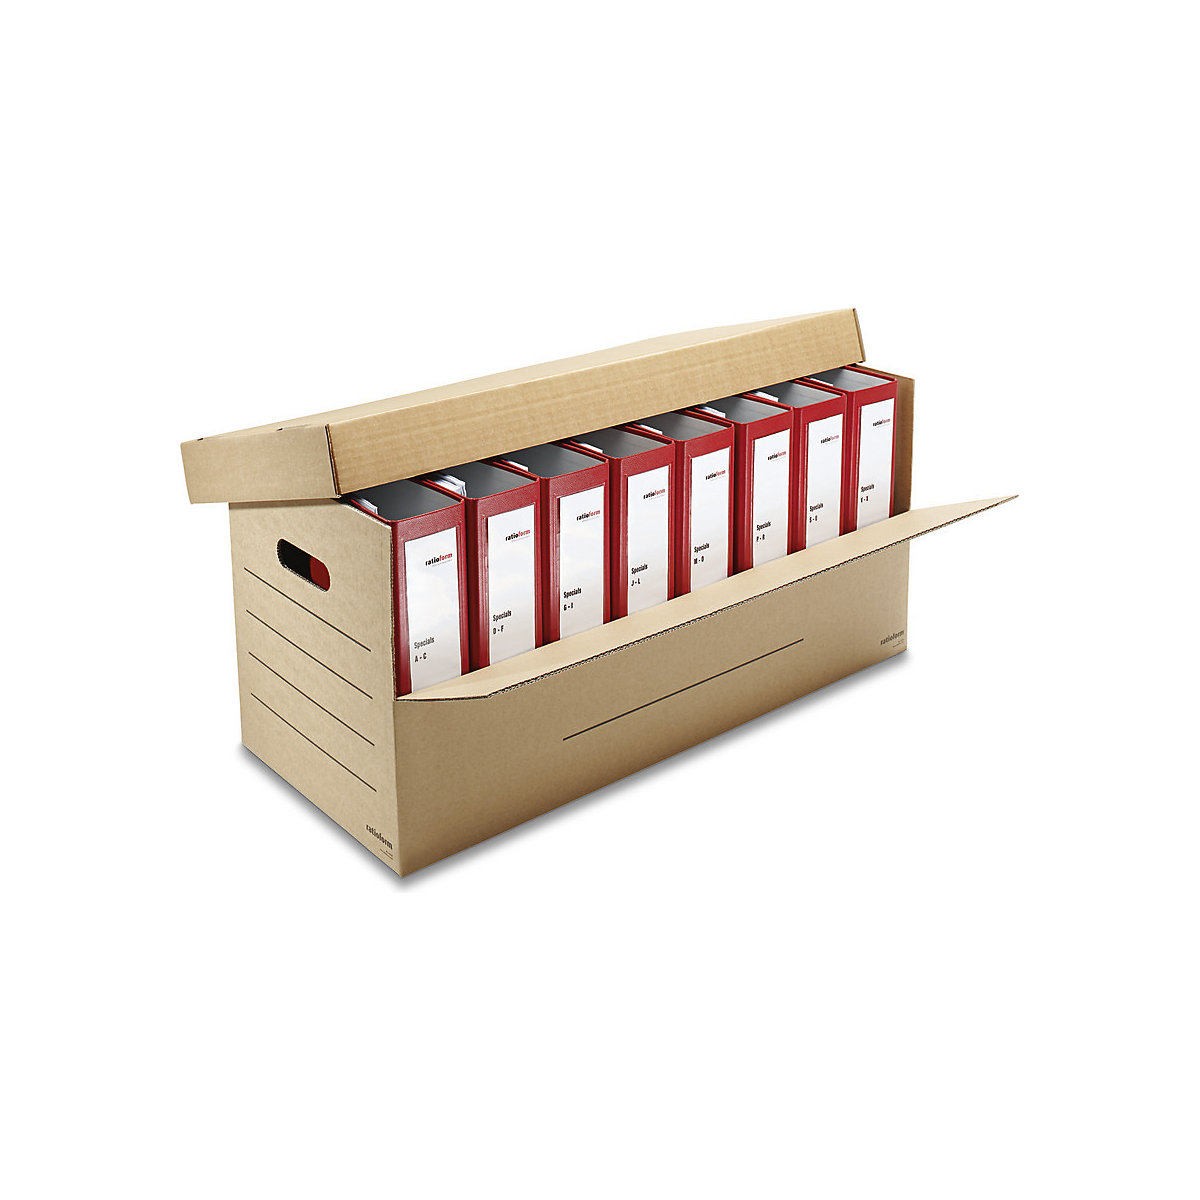 Ordner-Karton, für 3 – 8 breite Ordner mit Deckel, Innenmaße 690 x 300 x 320 mm, ab 5 Stk-1